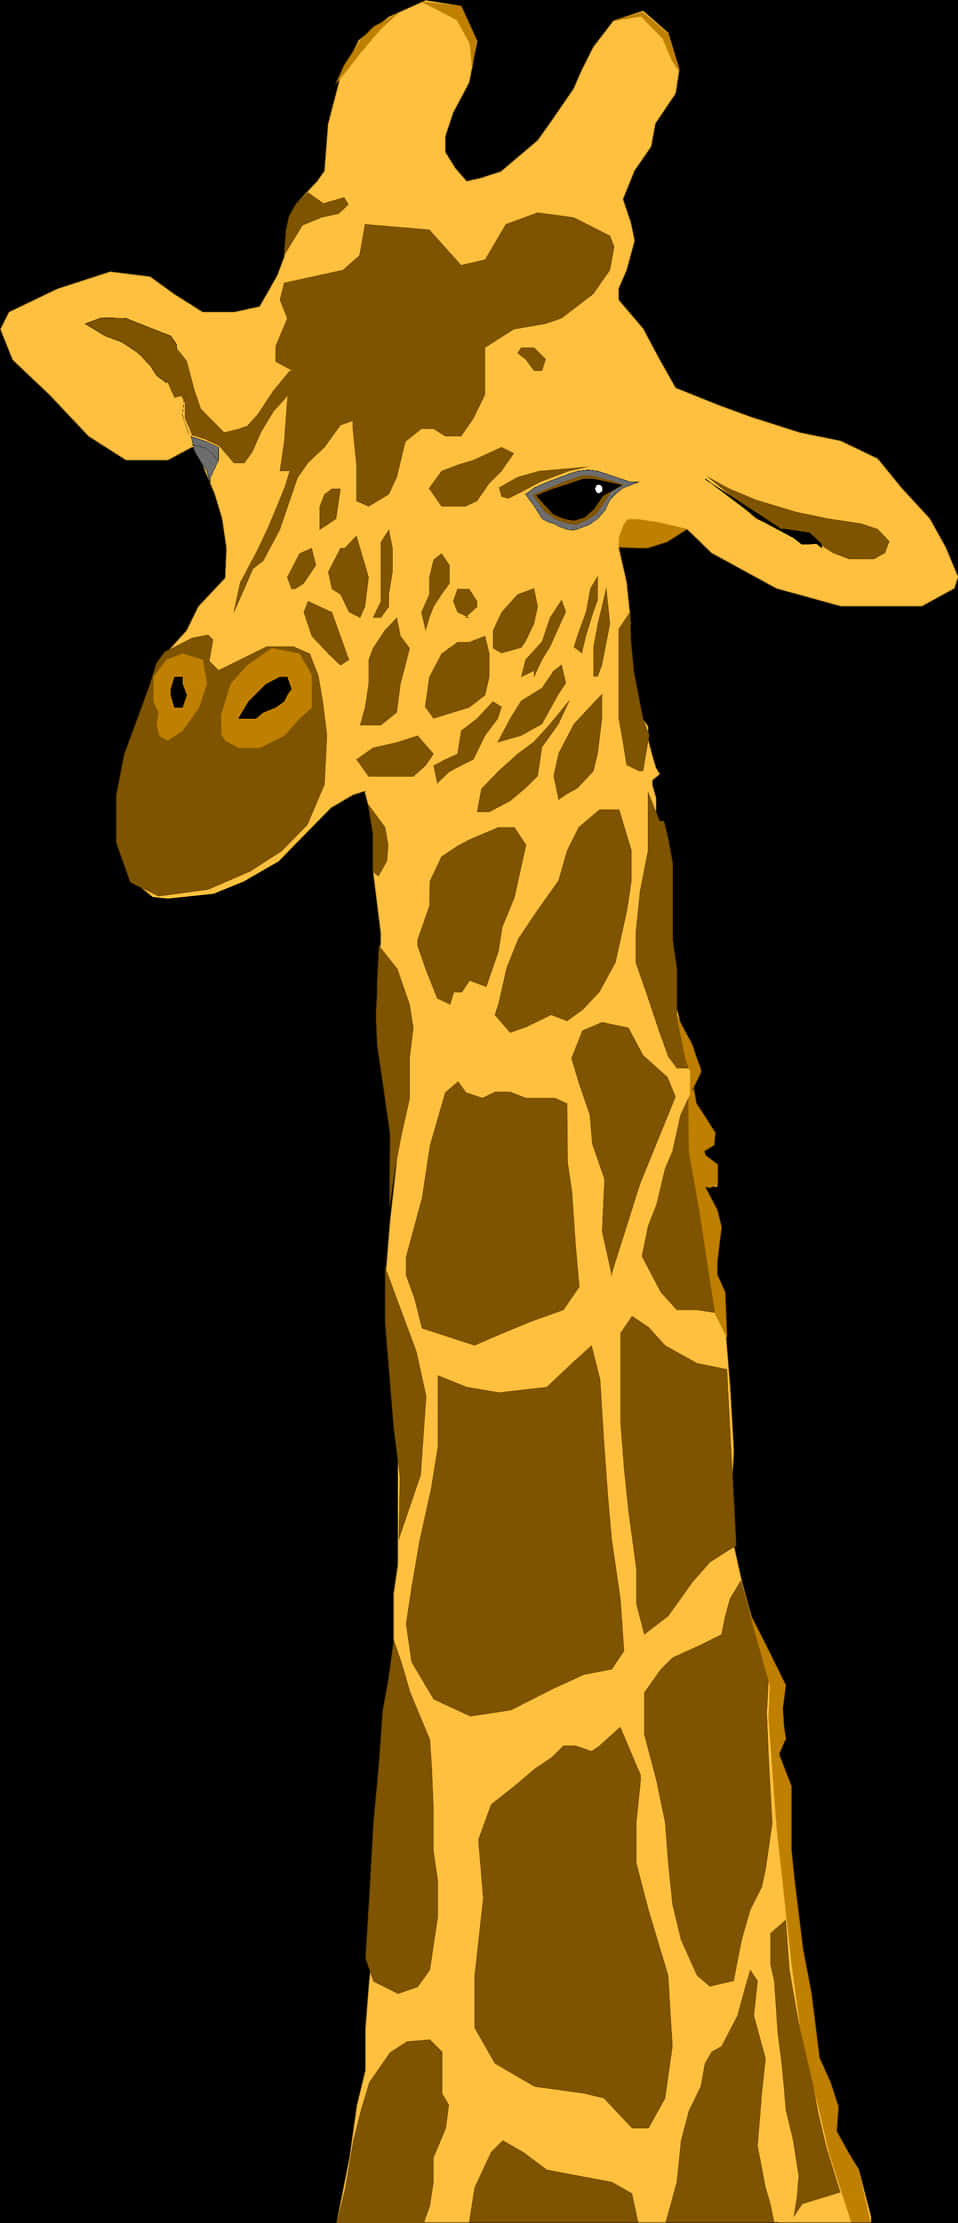 Giraffe Clipart Transparent Background - Transparent Background Giraffe Clipart